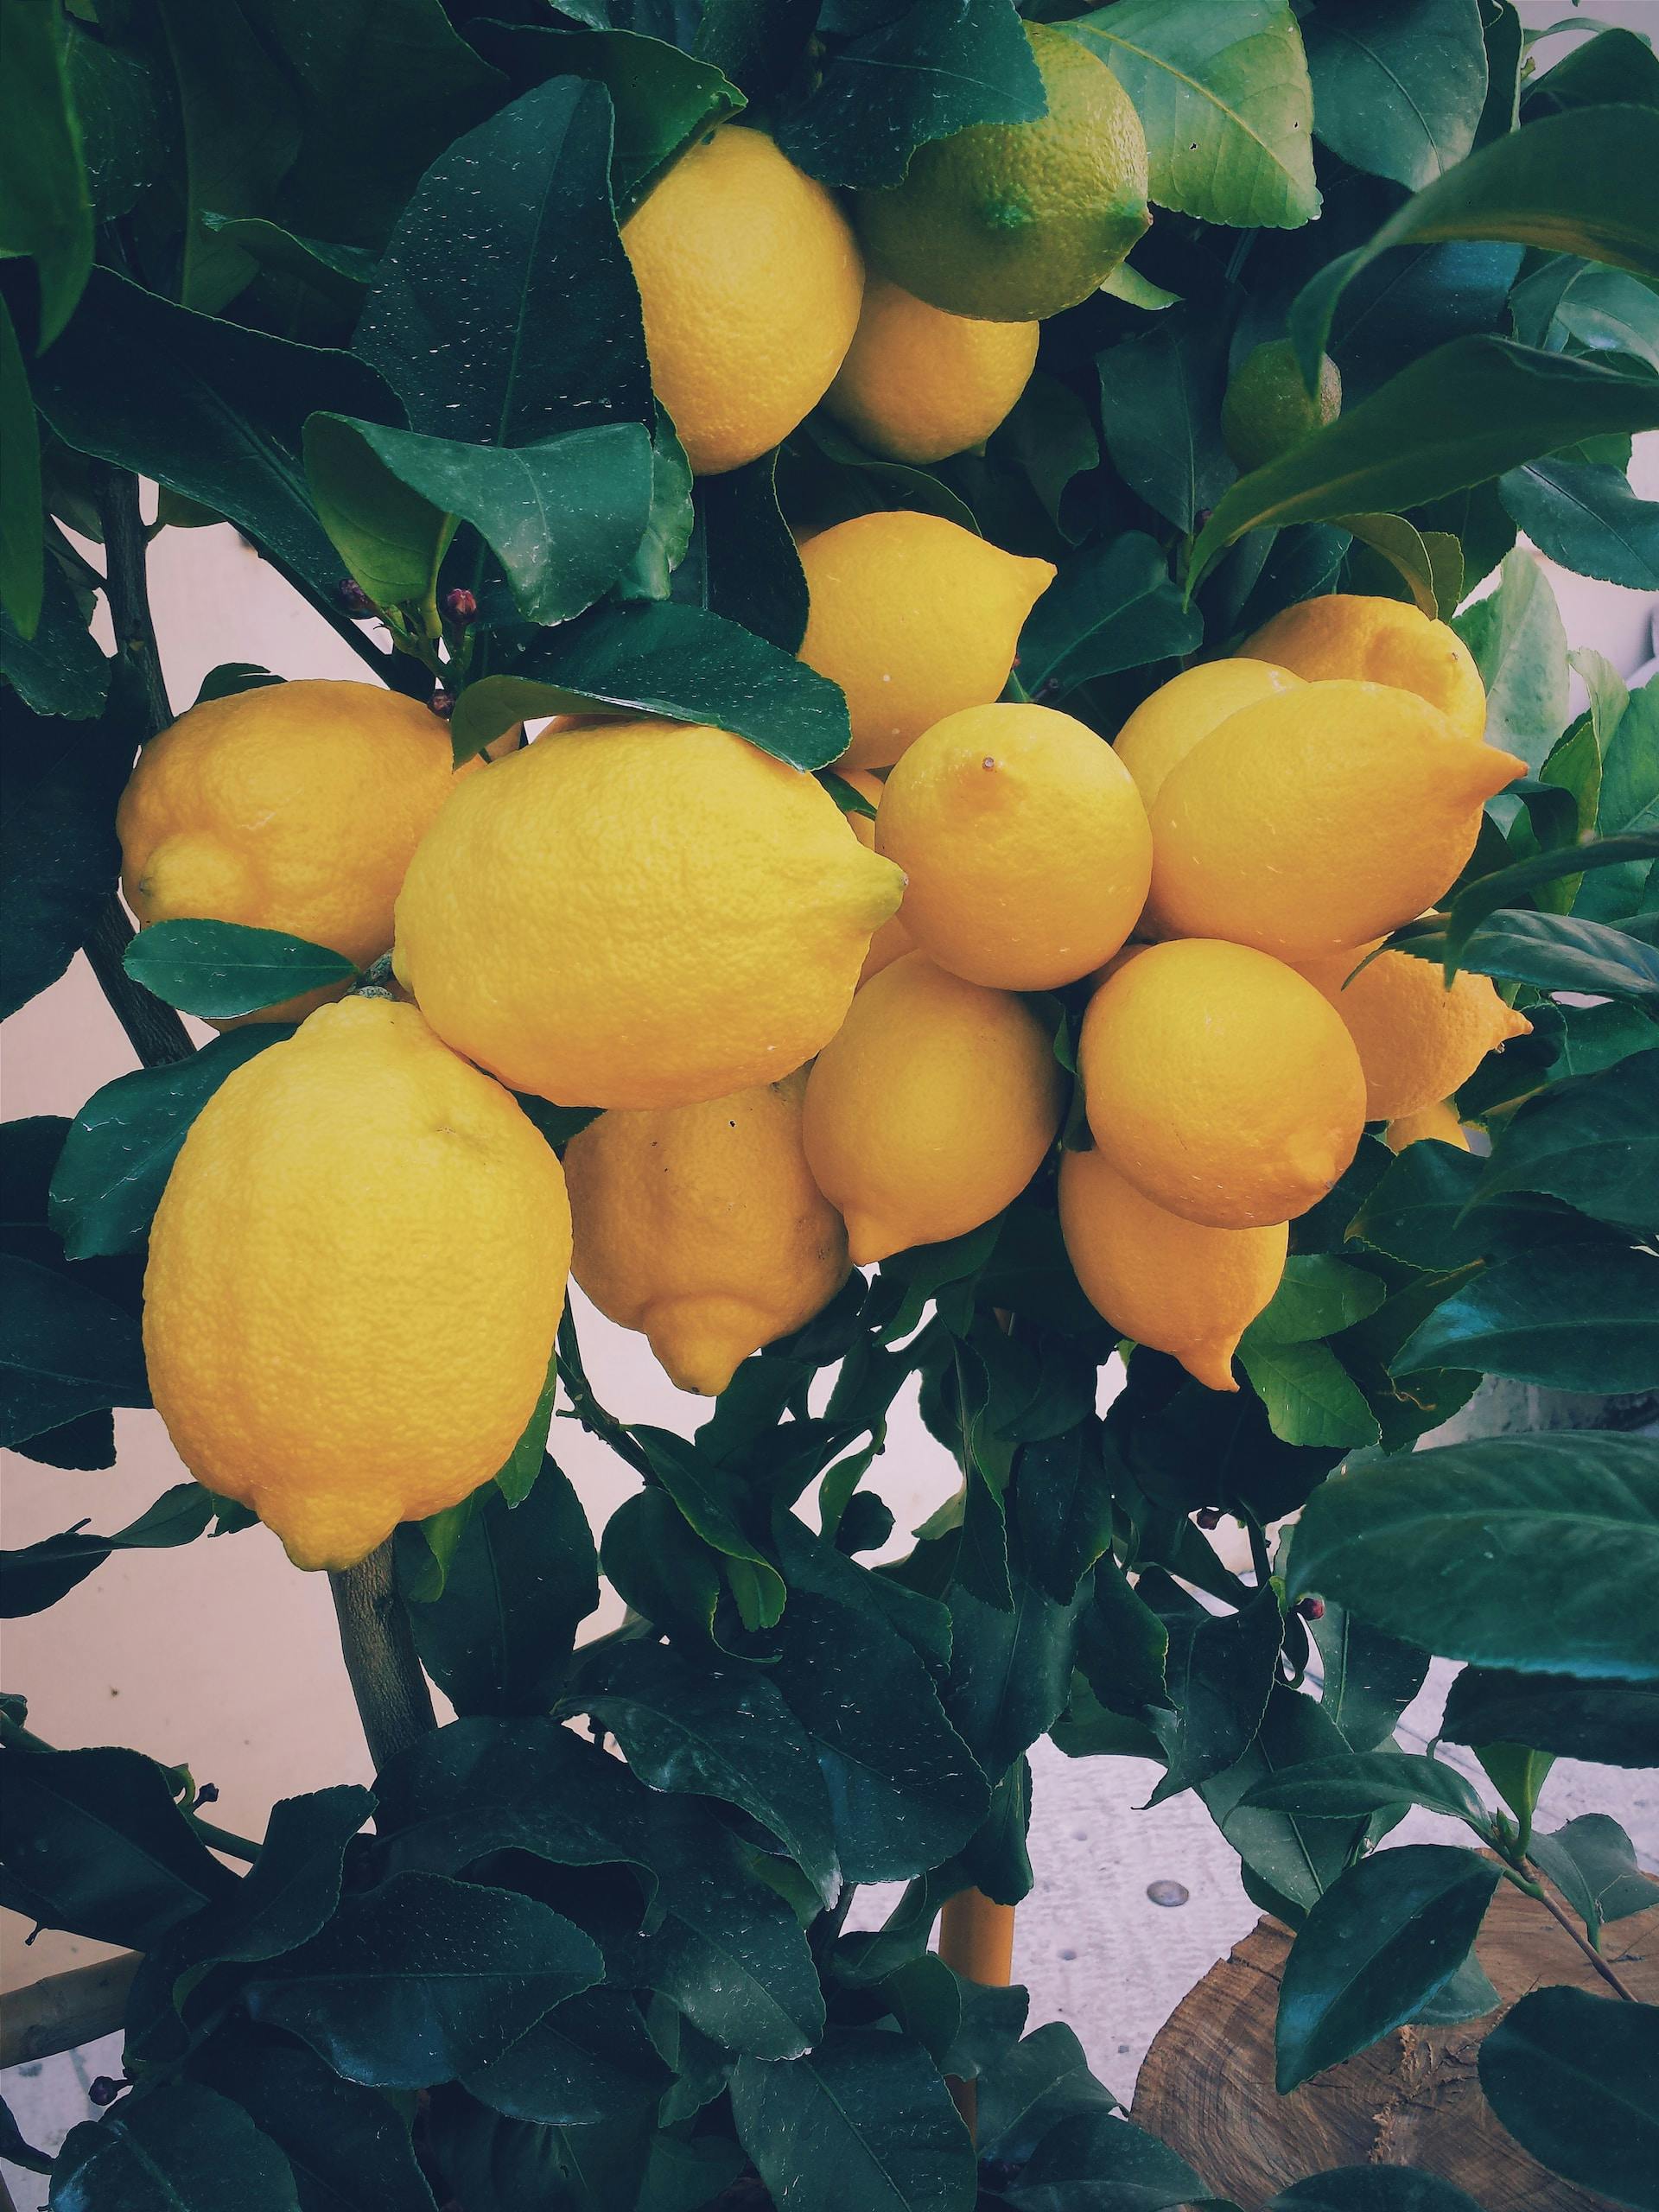 N'oubliez pas le zeste de citron : les 10 principaux avantages